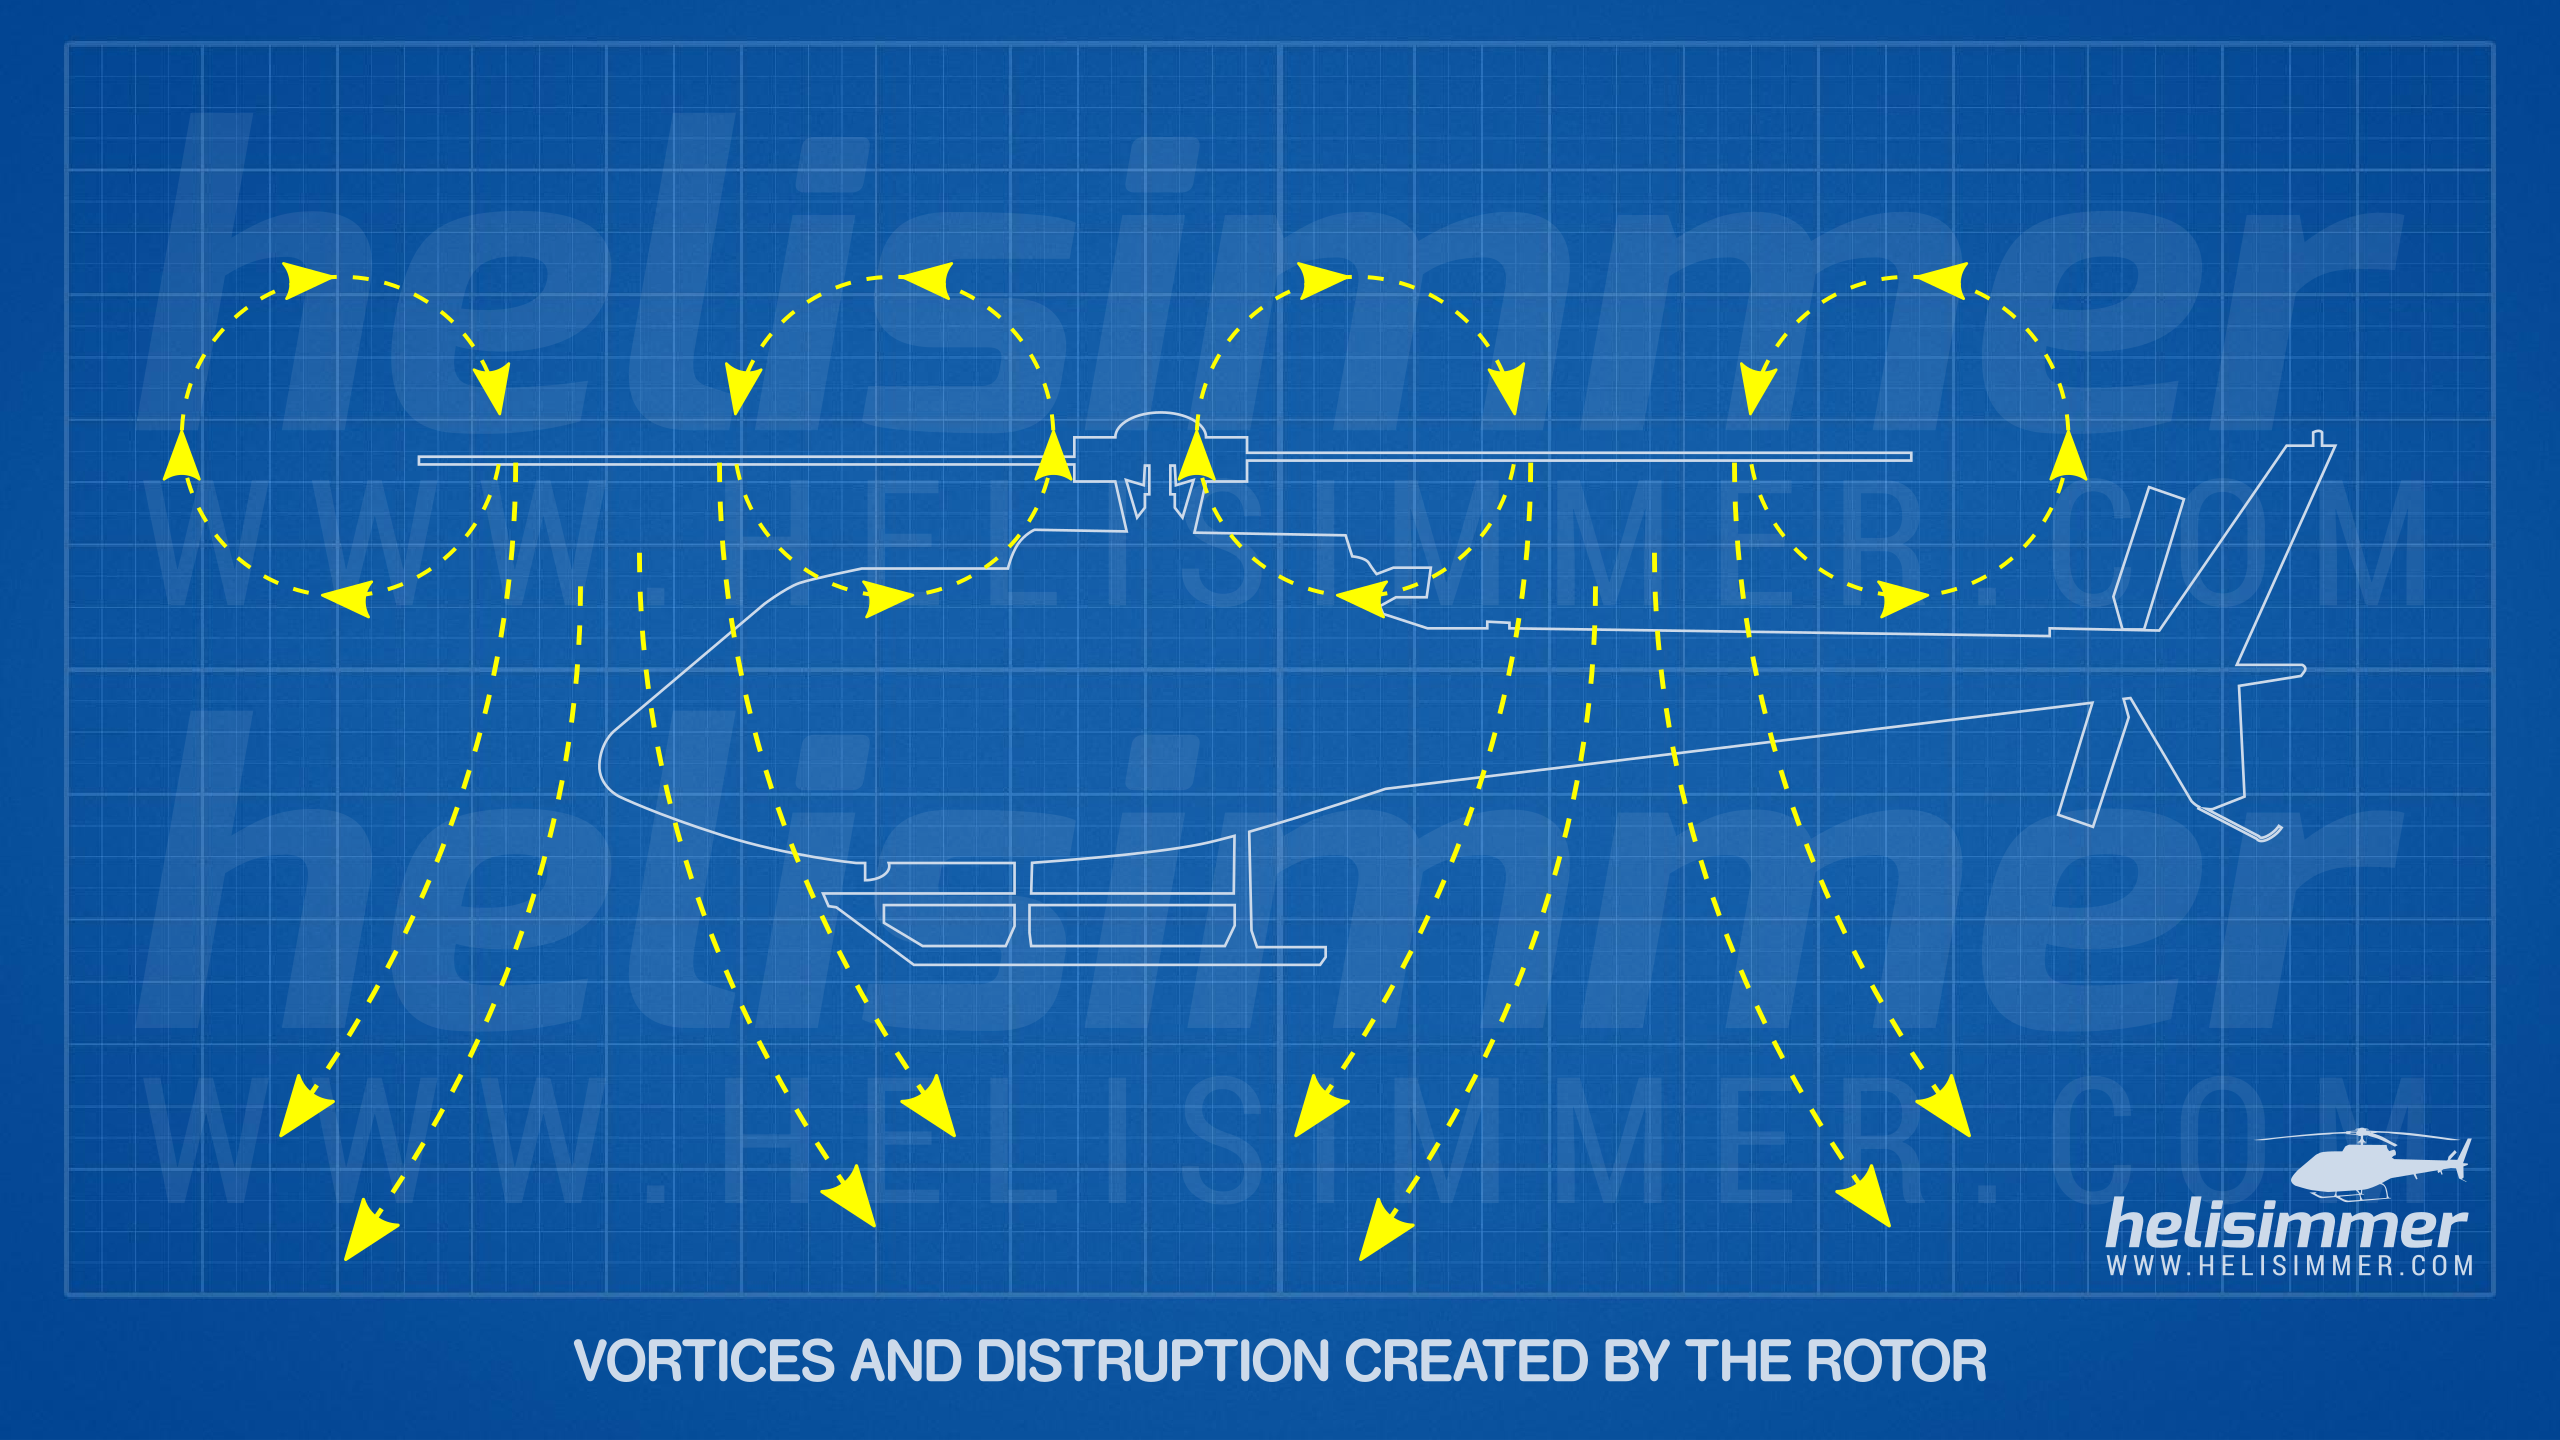 Vortex Ring State - Vortices and air disturbance